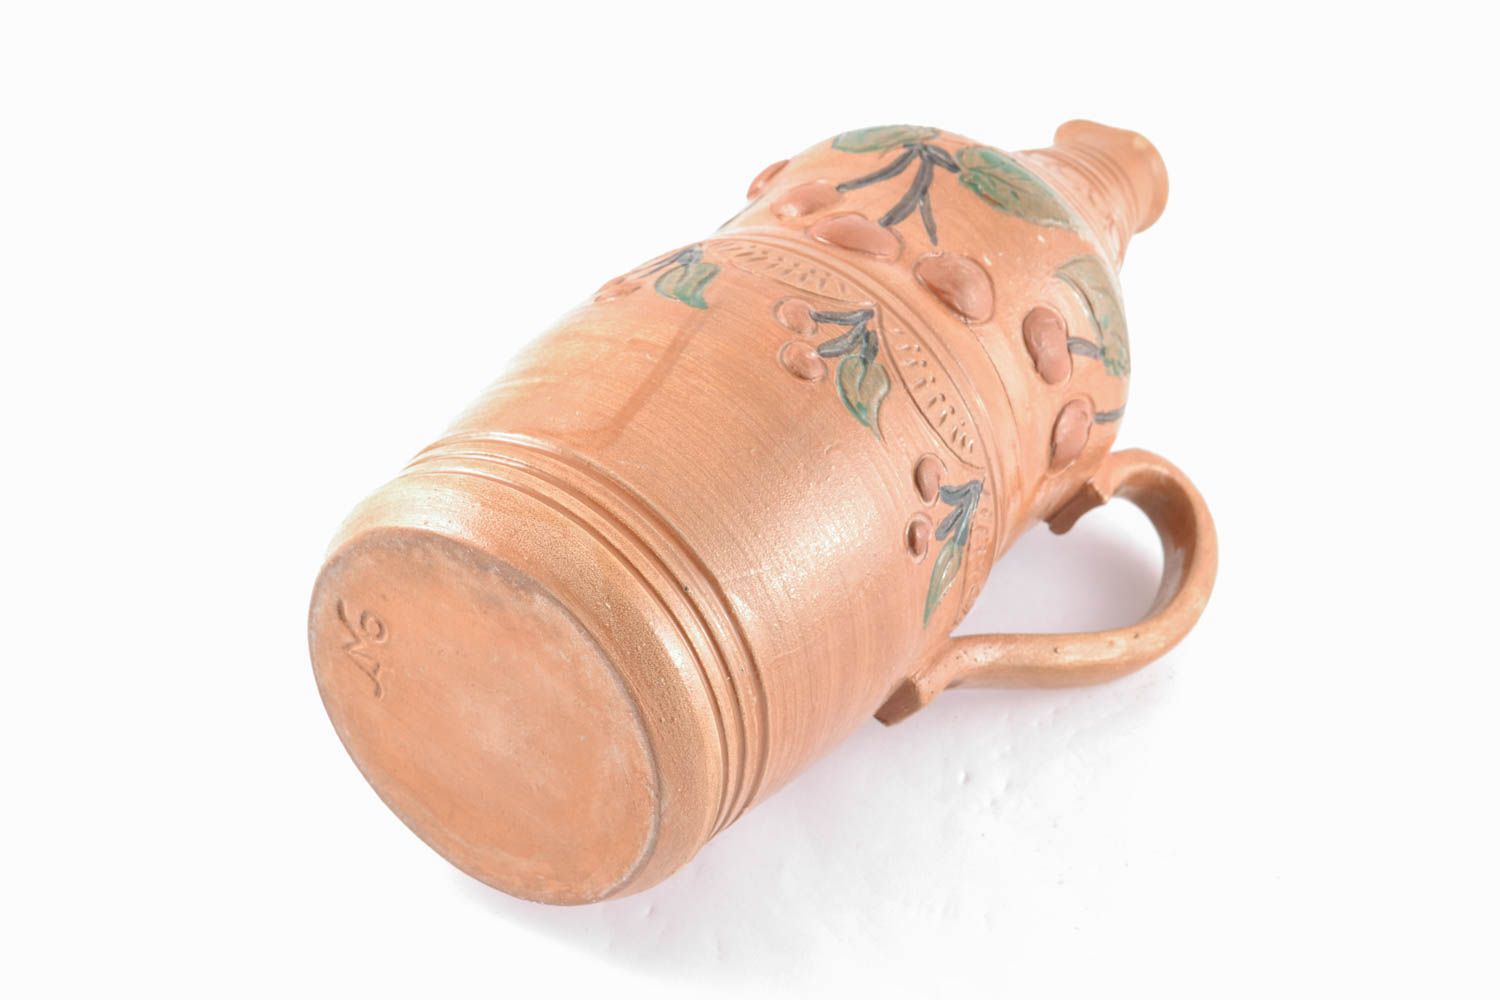 30 oz handmade ceramic terracotta wine bottle for home décor 3 lb photo 1